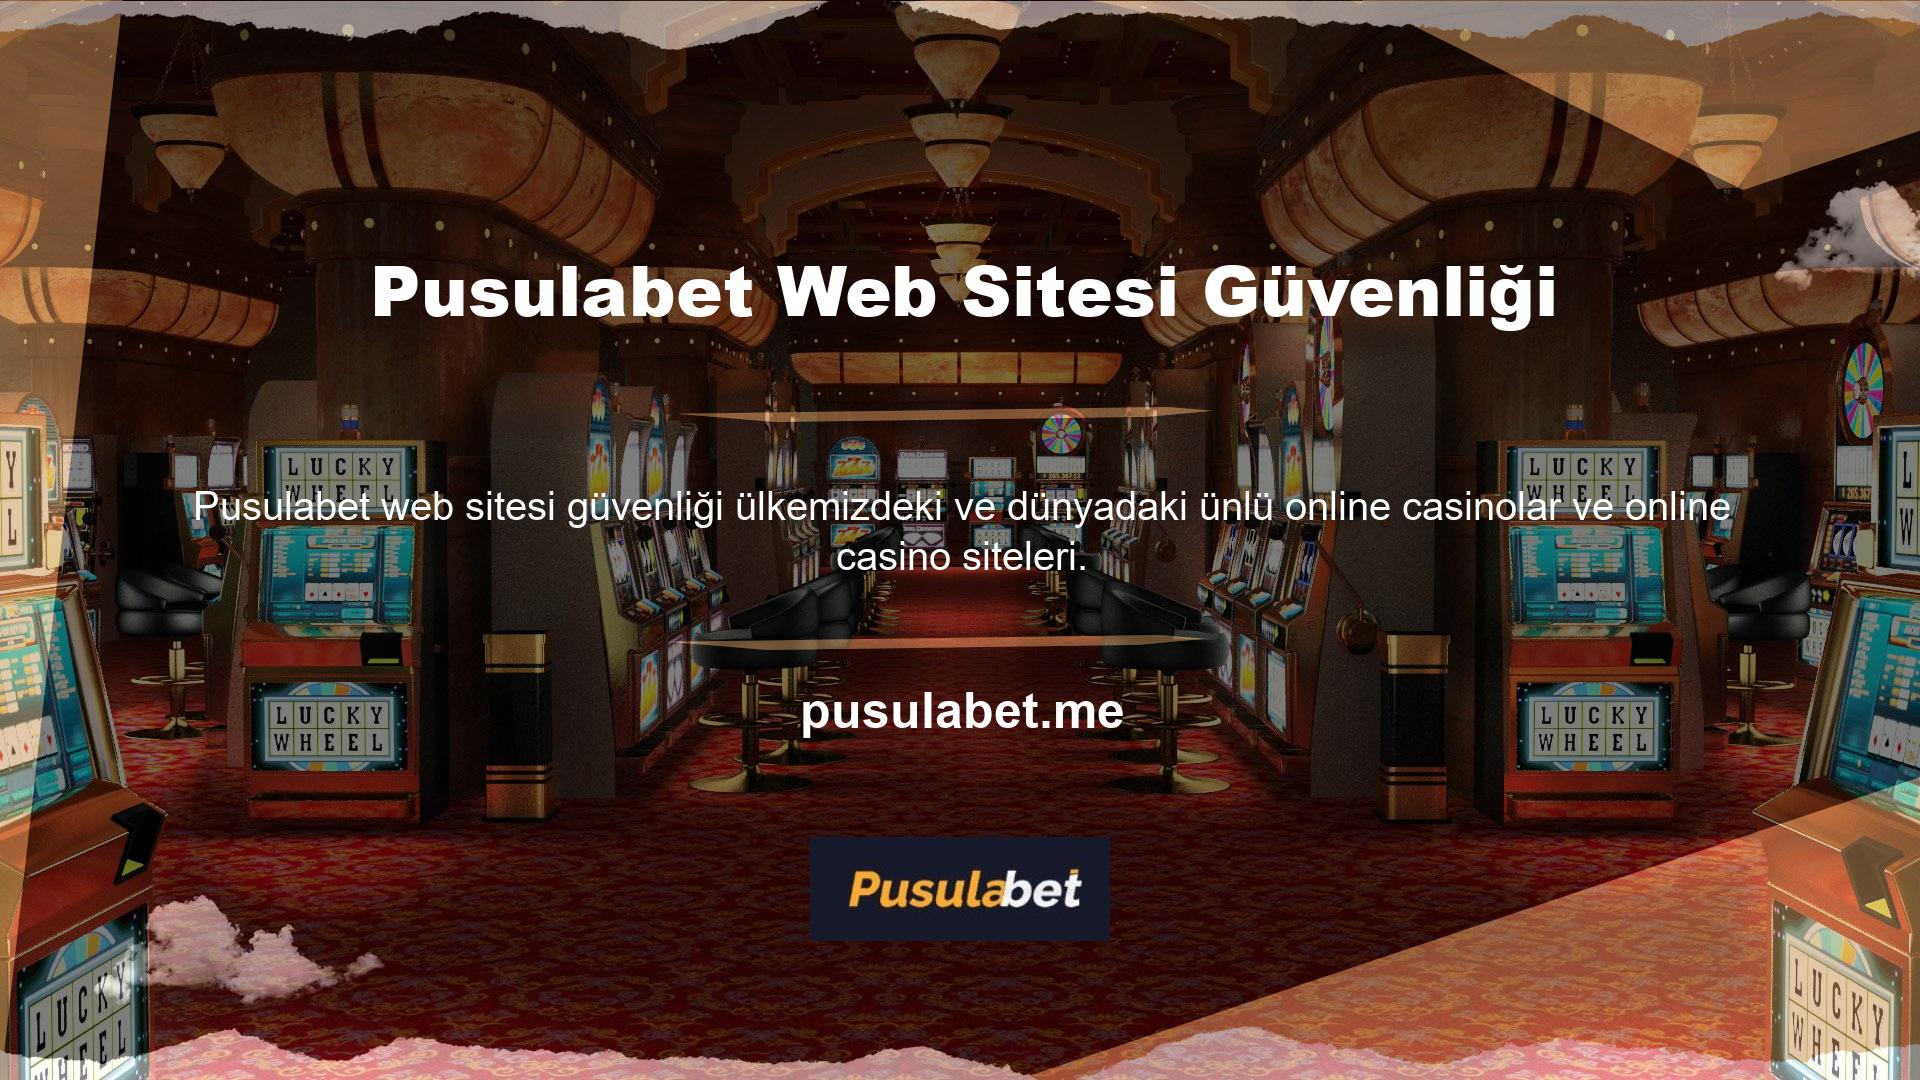 Online casinolar ülkemizde yaygın olarak bilinen ve popüler bir oyun olarak değerlendirilmekte ve bu alanda hizmet veren online casino sitelerinin sayısı talebe bağlı olarak artmaktadır